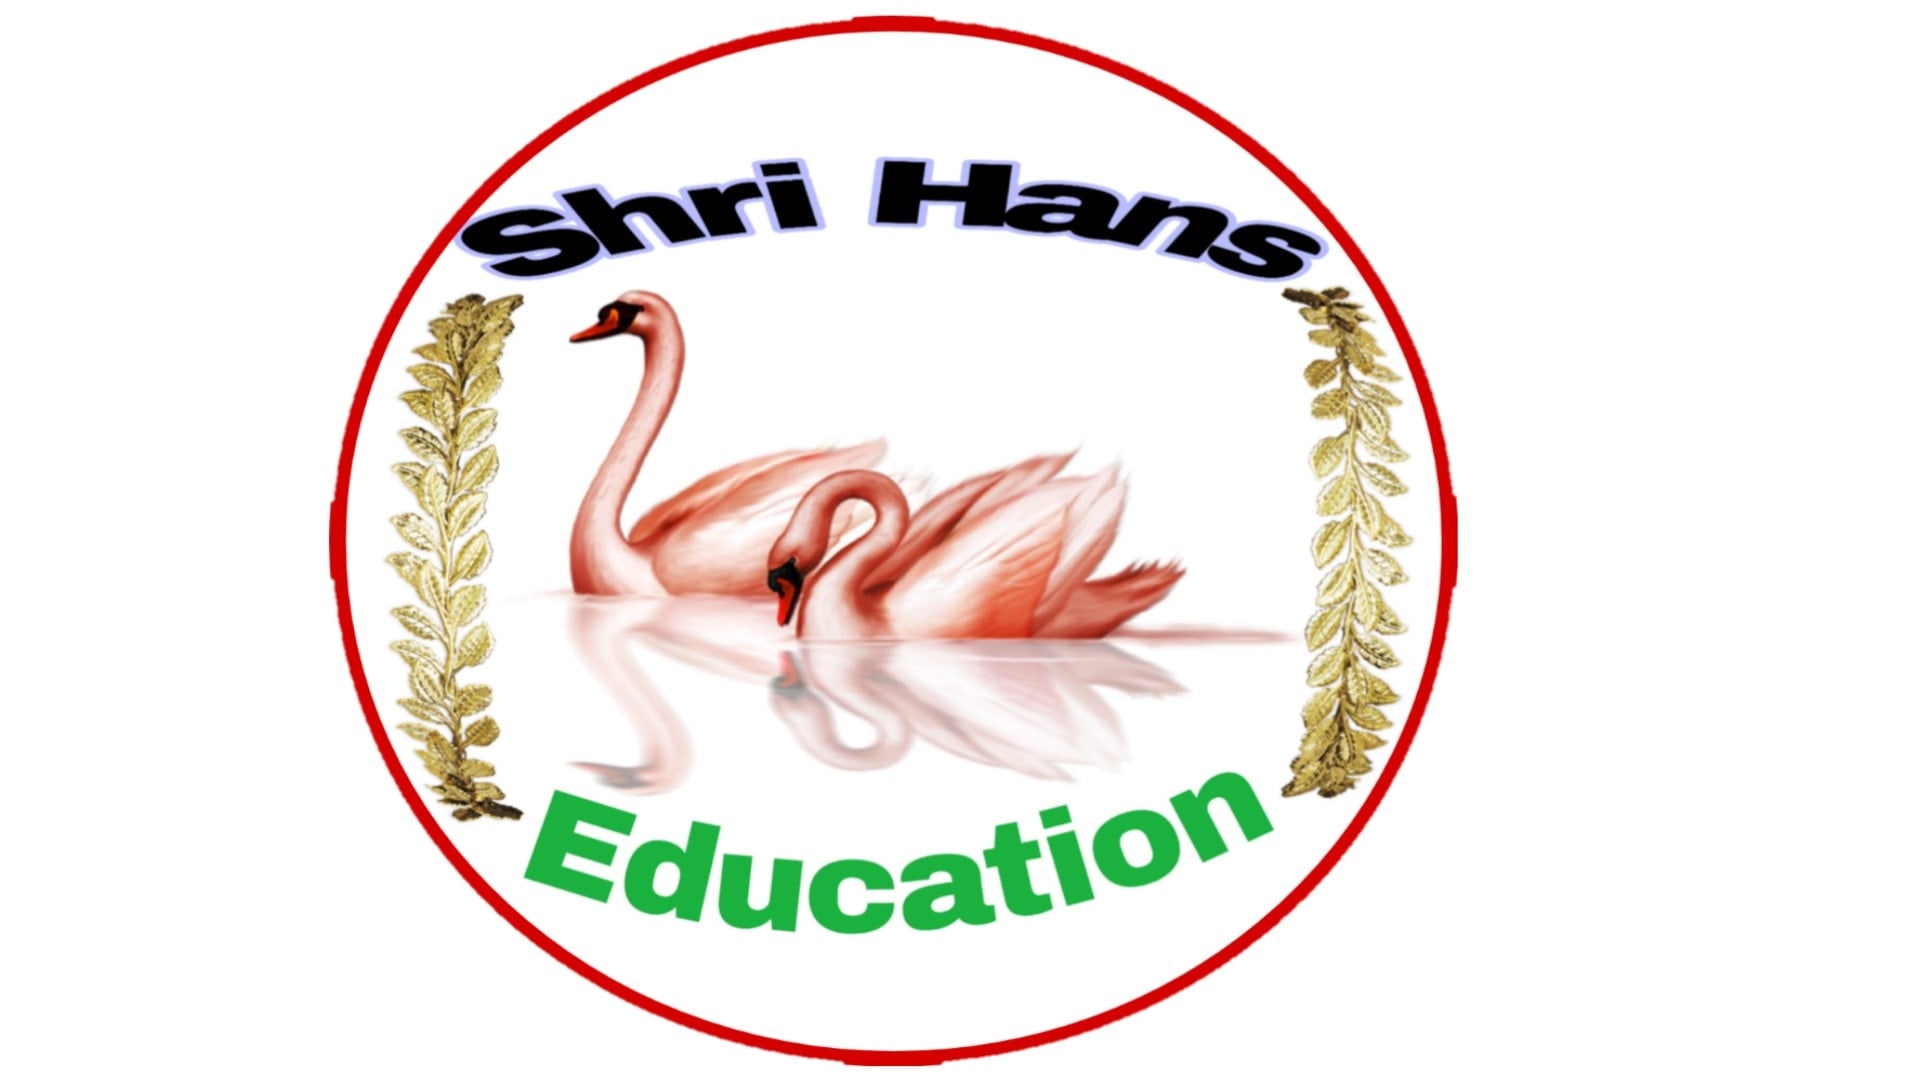 Shri Hans Education